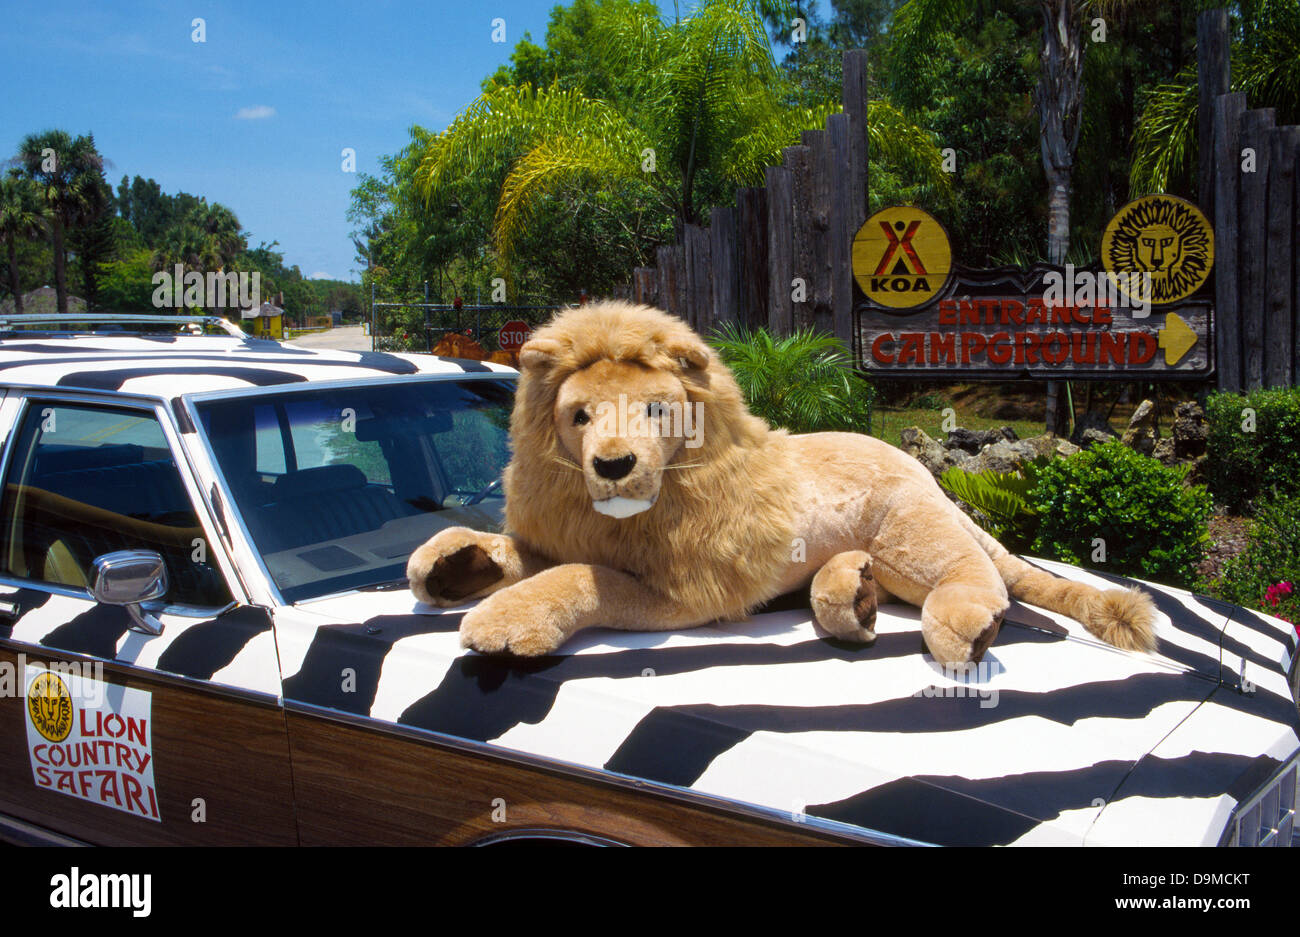 Un jouet lion accueille les visiteurs à Lion Country Safari, un drive-s parc zoologique avec plus de 900 animaux sauvages près de West Palm Beach, Floride, USA. Banque D'Images